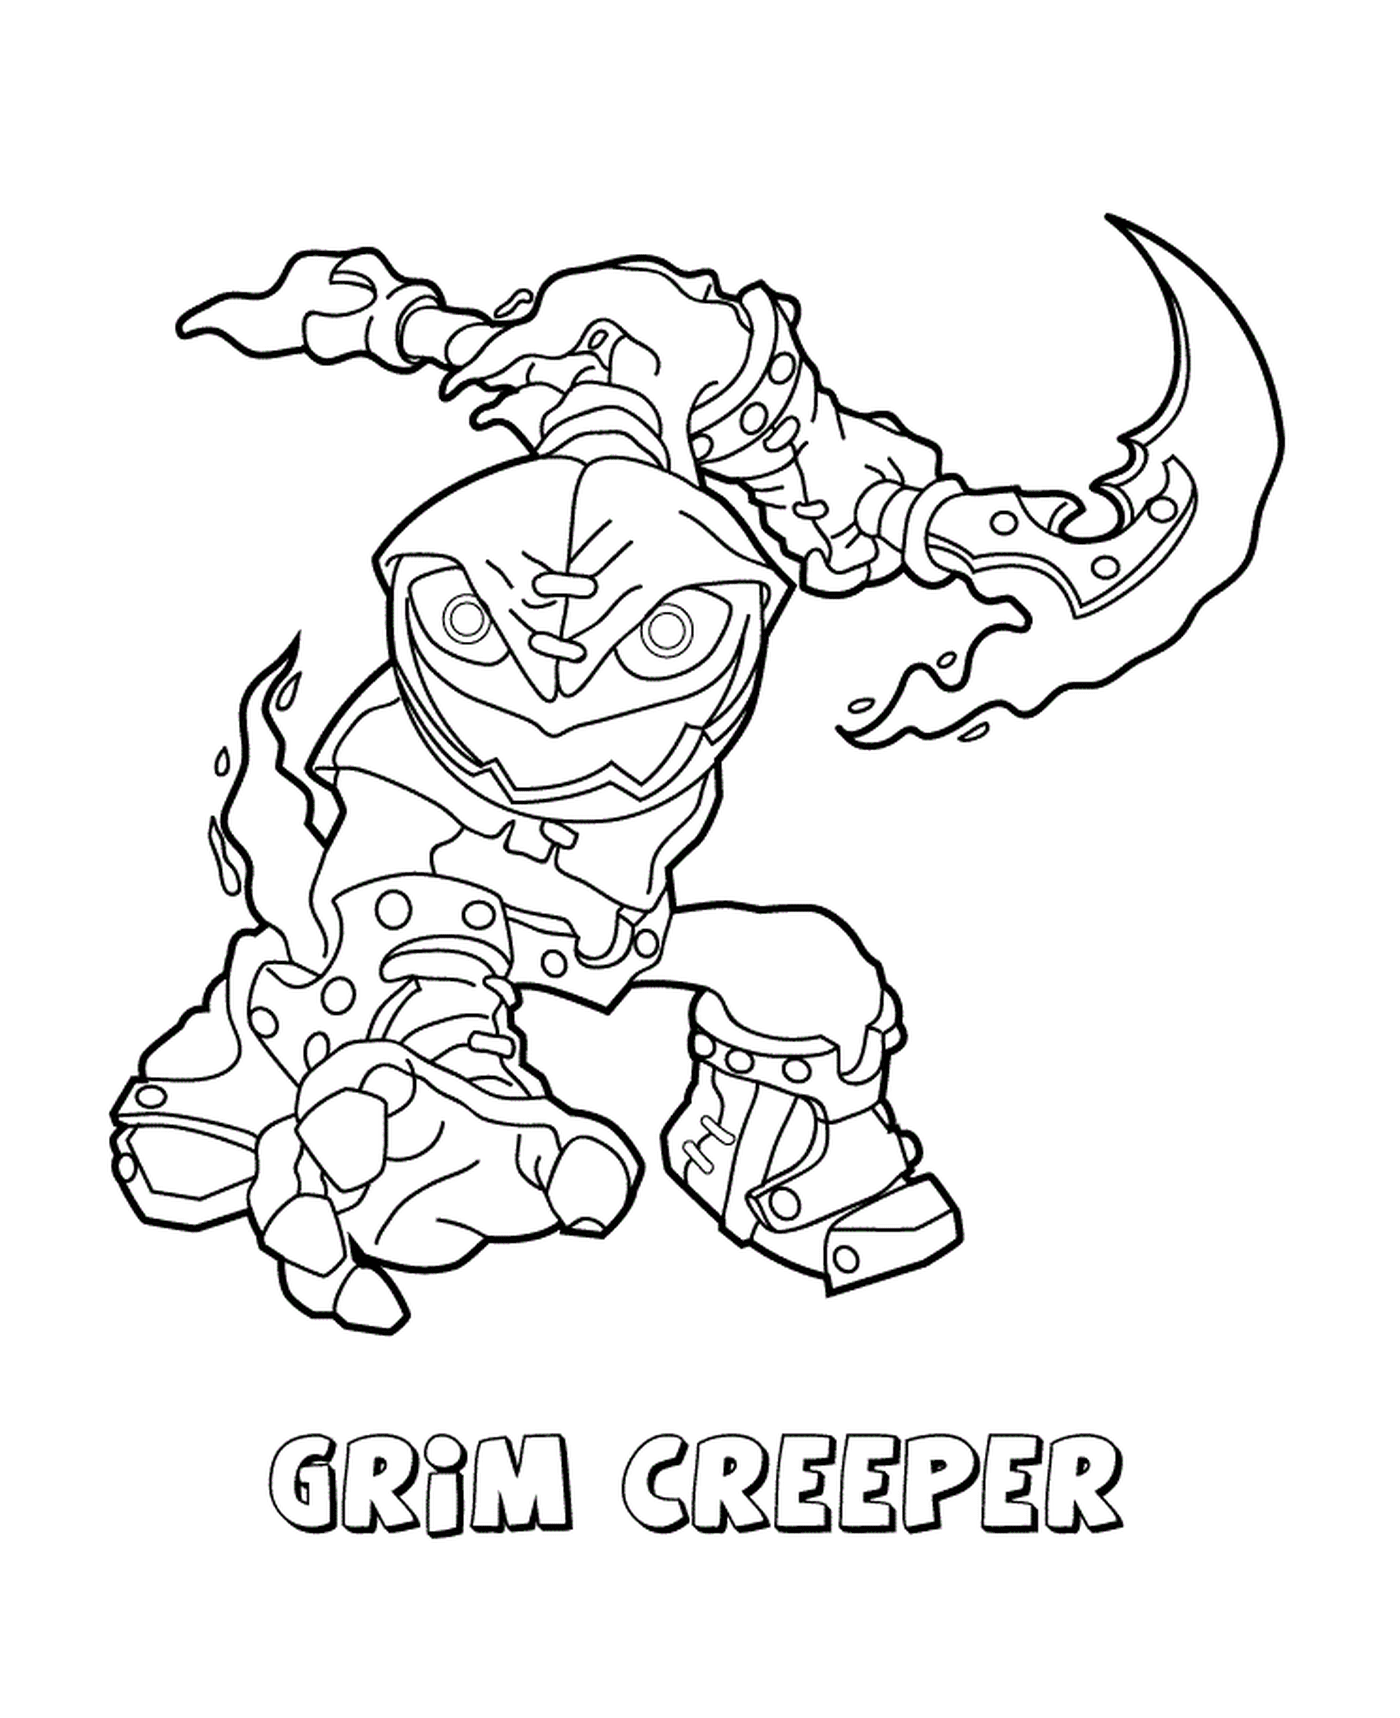  Skylanders Swap Force Undead Grim Creeper formidabile 